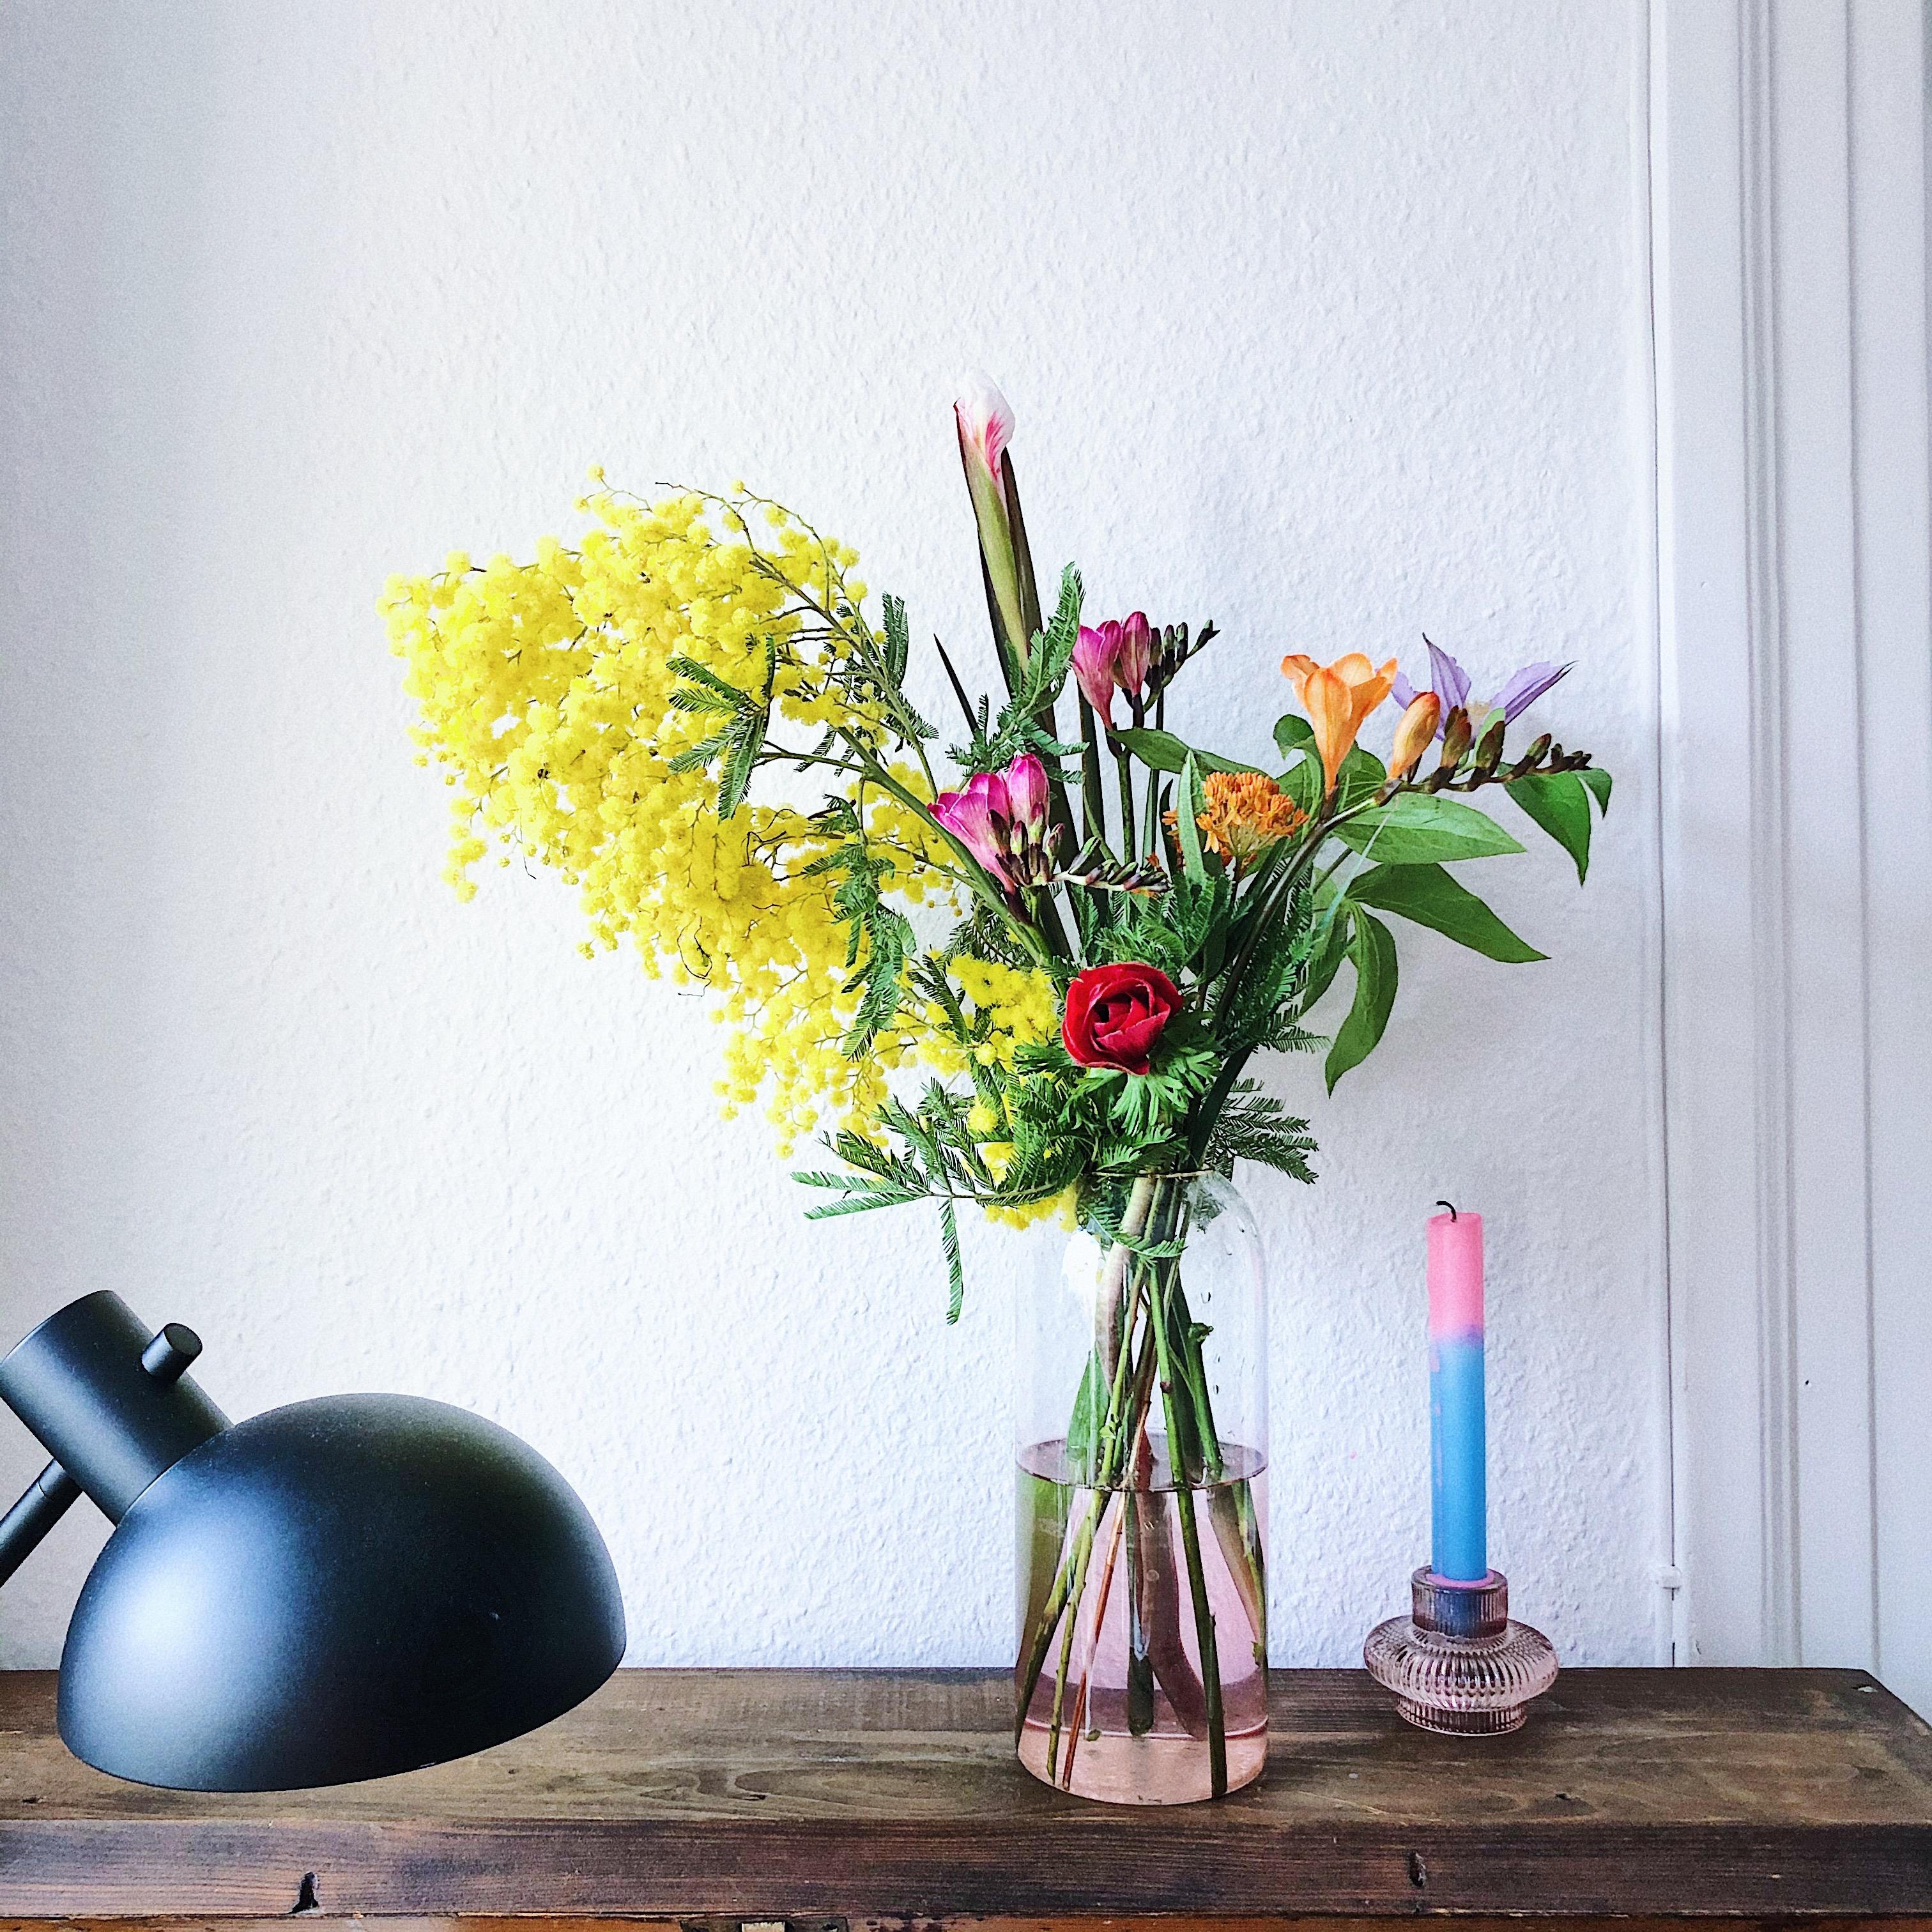 Et voilà: noch mehr Frühling 💐 
#Blumen #Blumenliebe #Vasensucht #Dyedipkerze